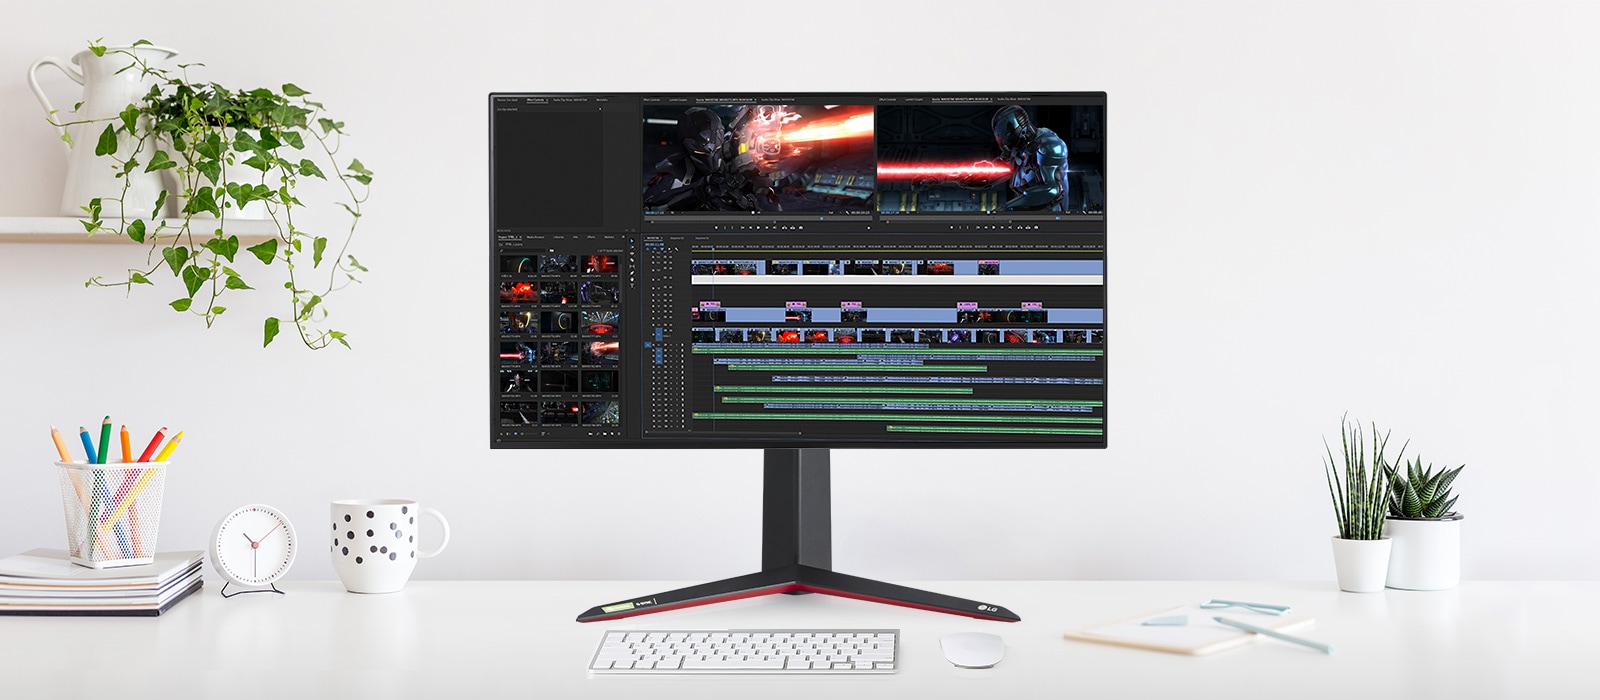 De monitor ondersteunt 4K UHD-resolutie die 98% van het DCI-P3 kleurengamma en 10-bit-kleur dekt